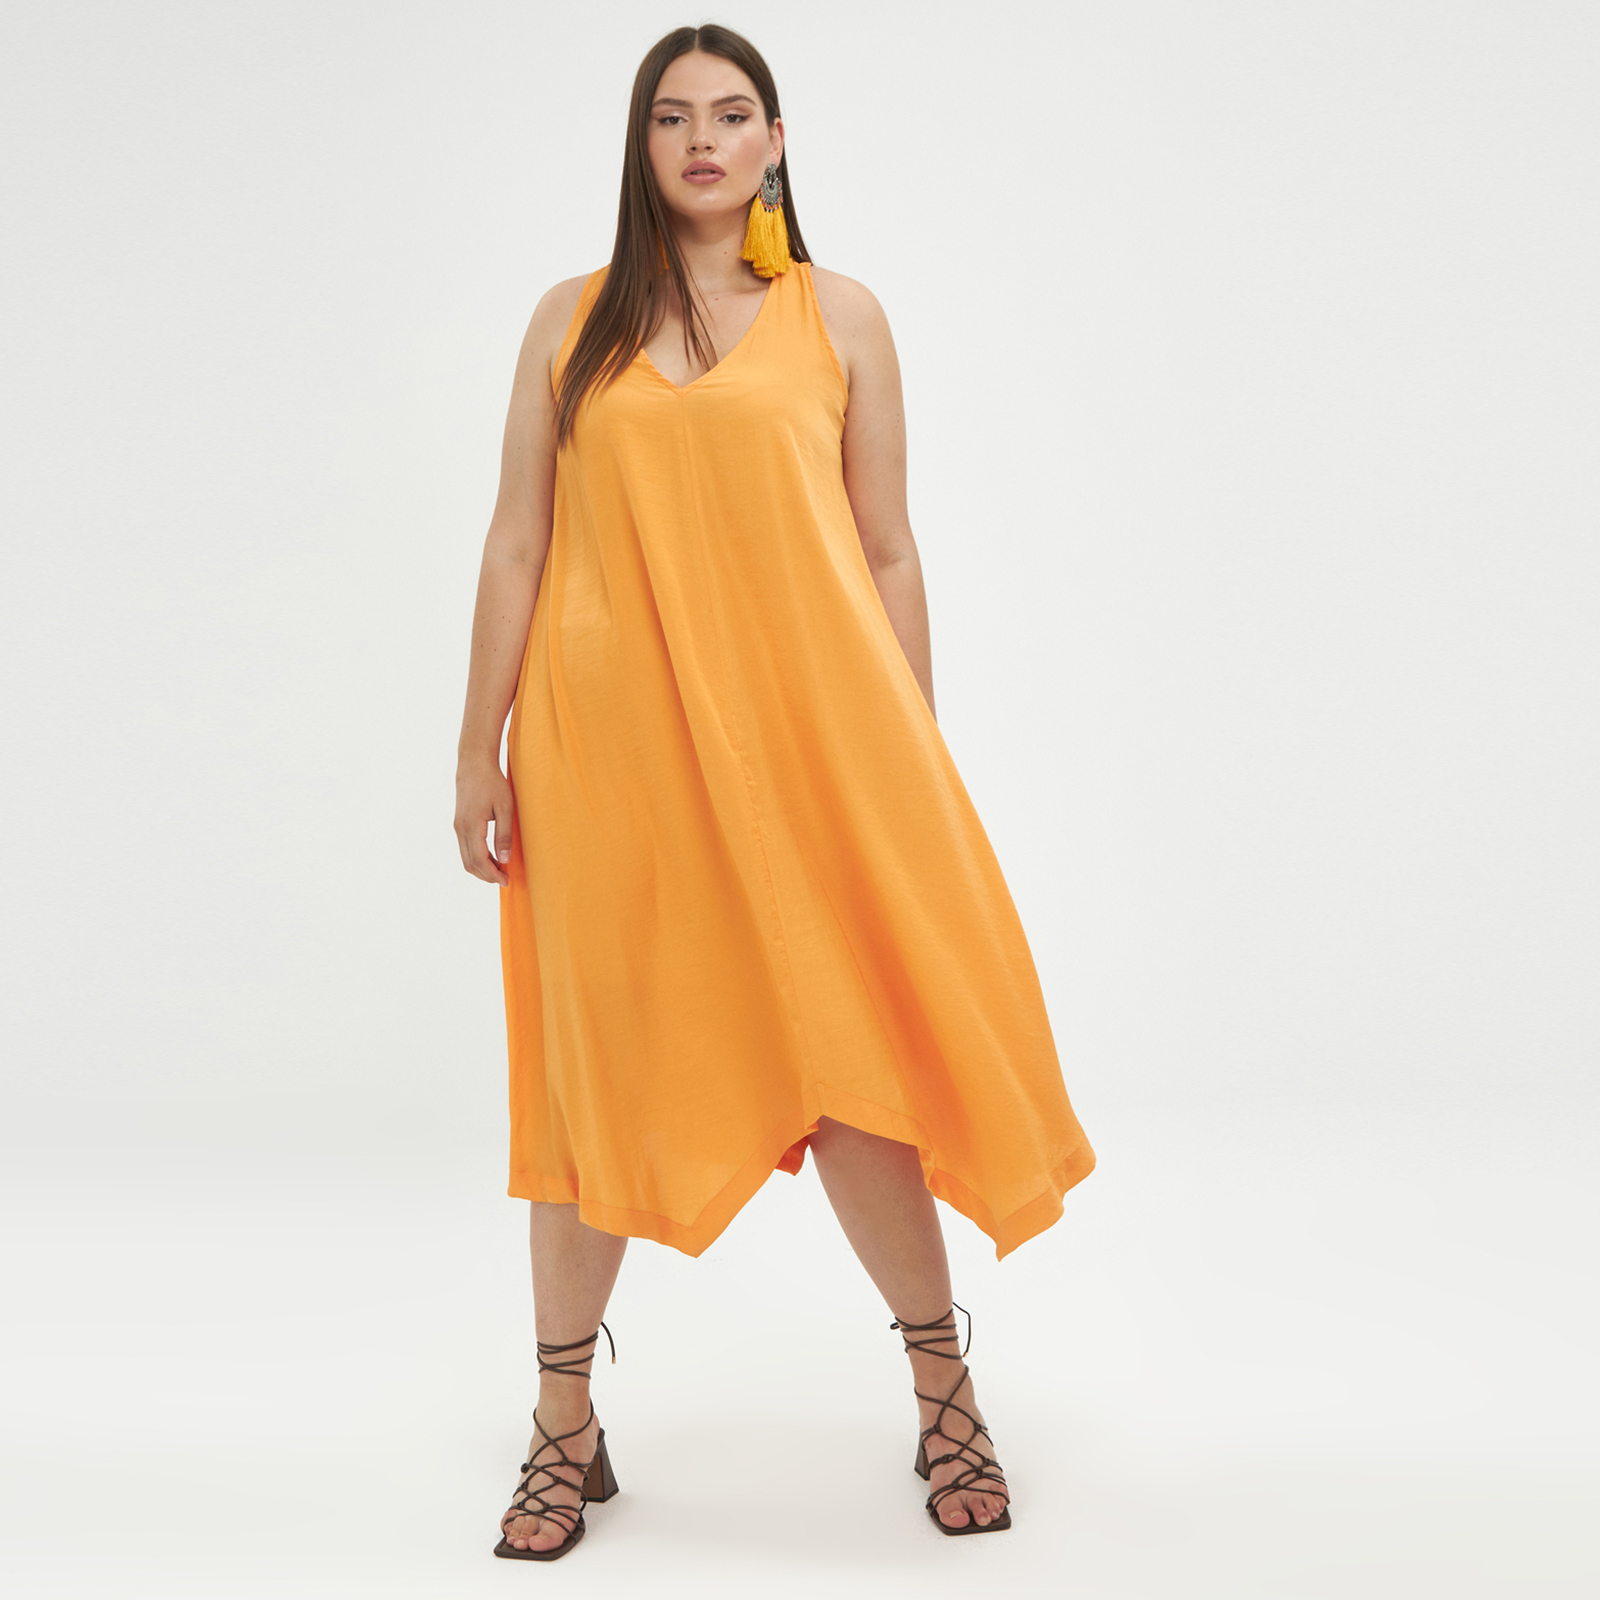 Φόρεμα αμάνικο σατέν 8101.7027-papaya